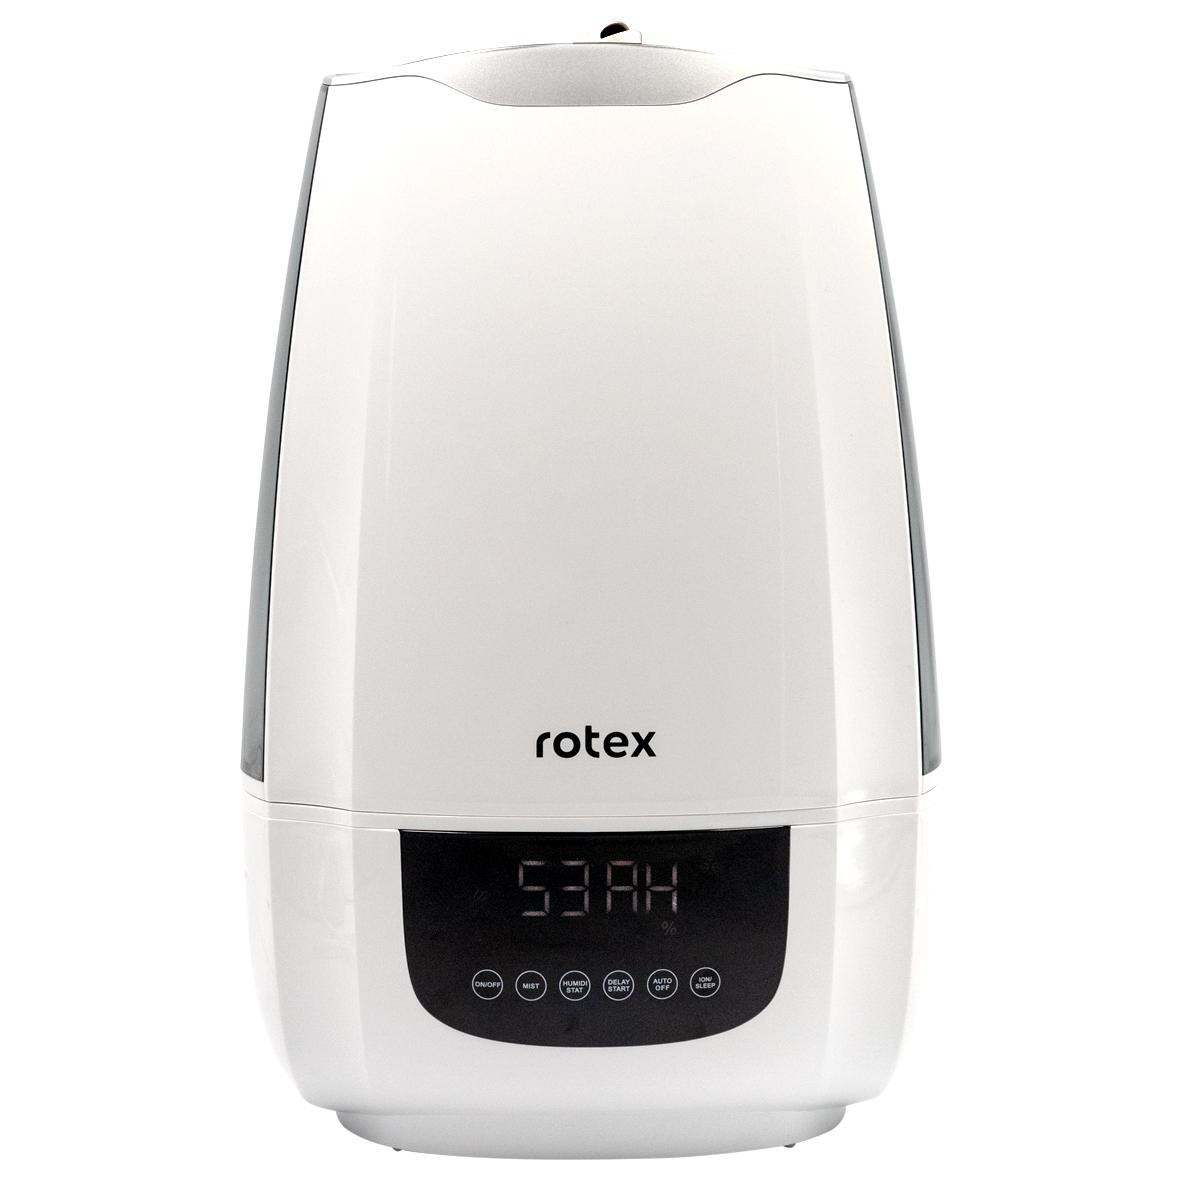 Ціна  Rotex RHF600-W в Києві